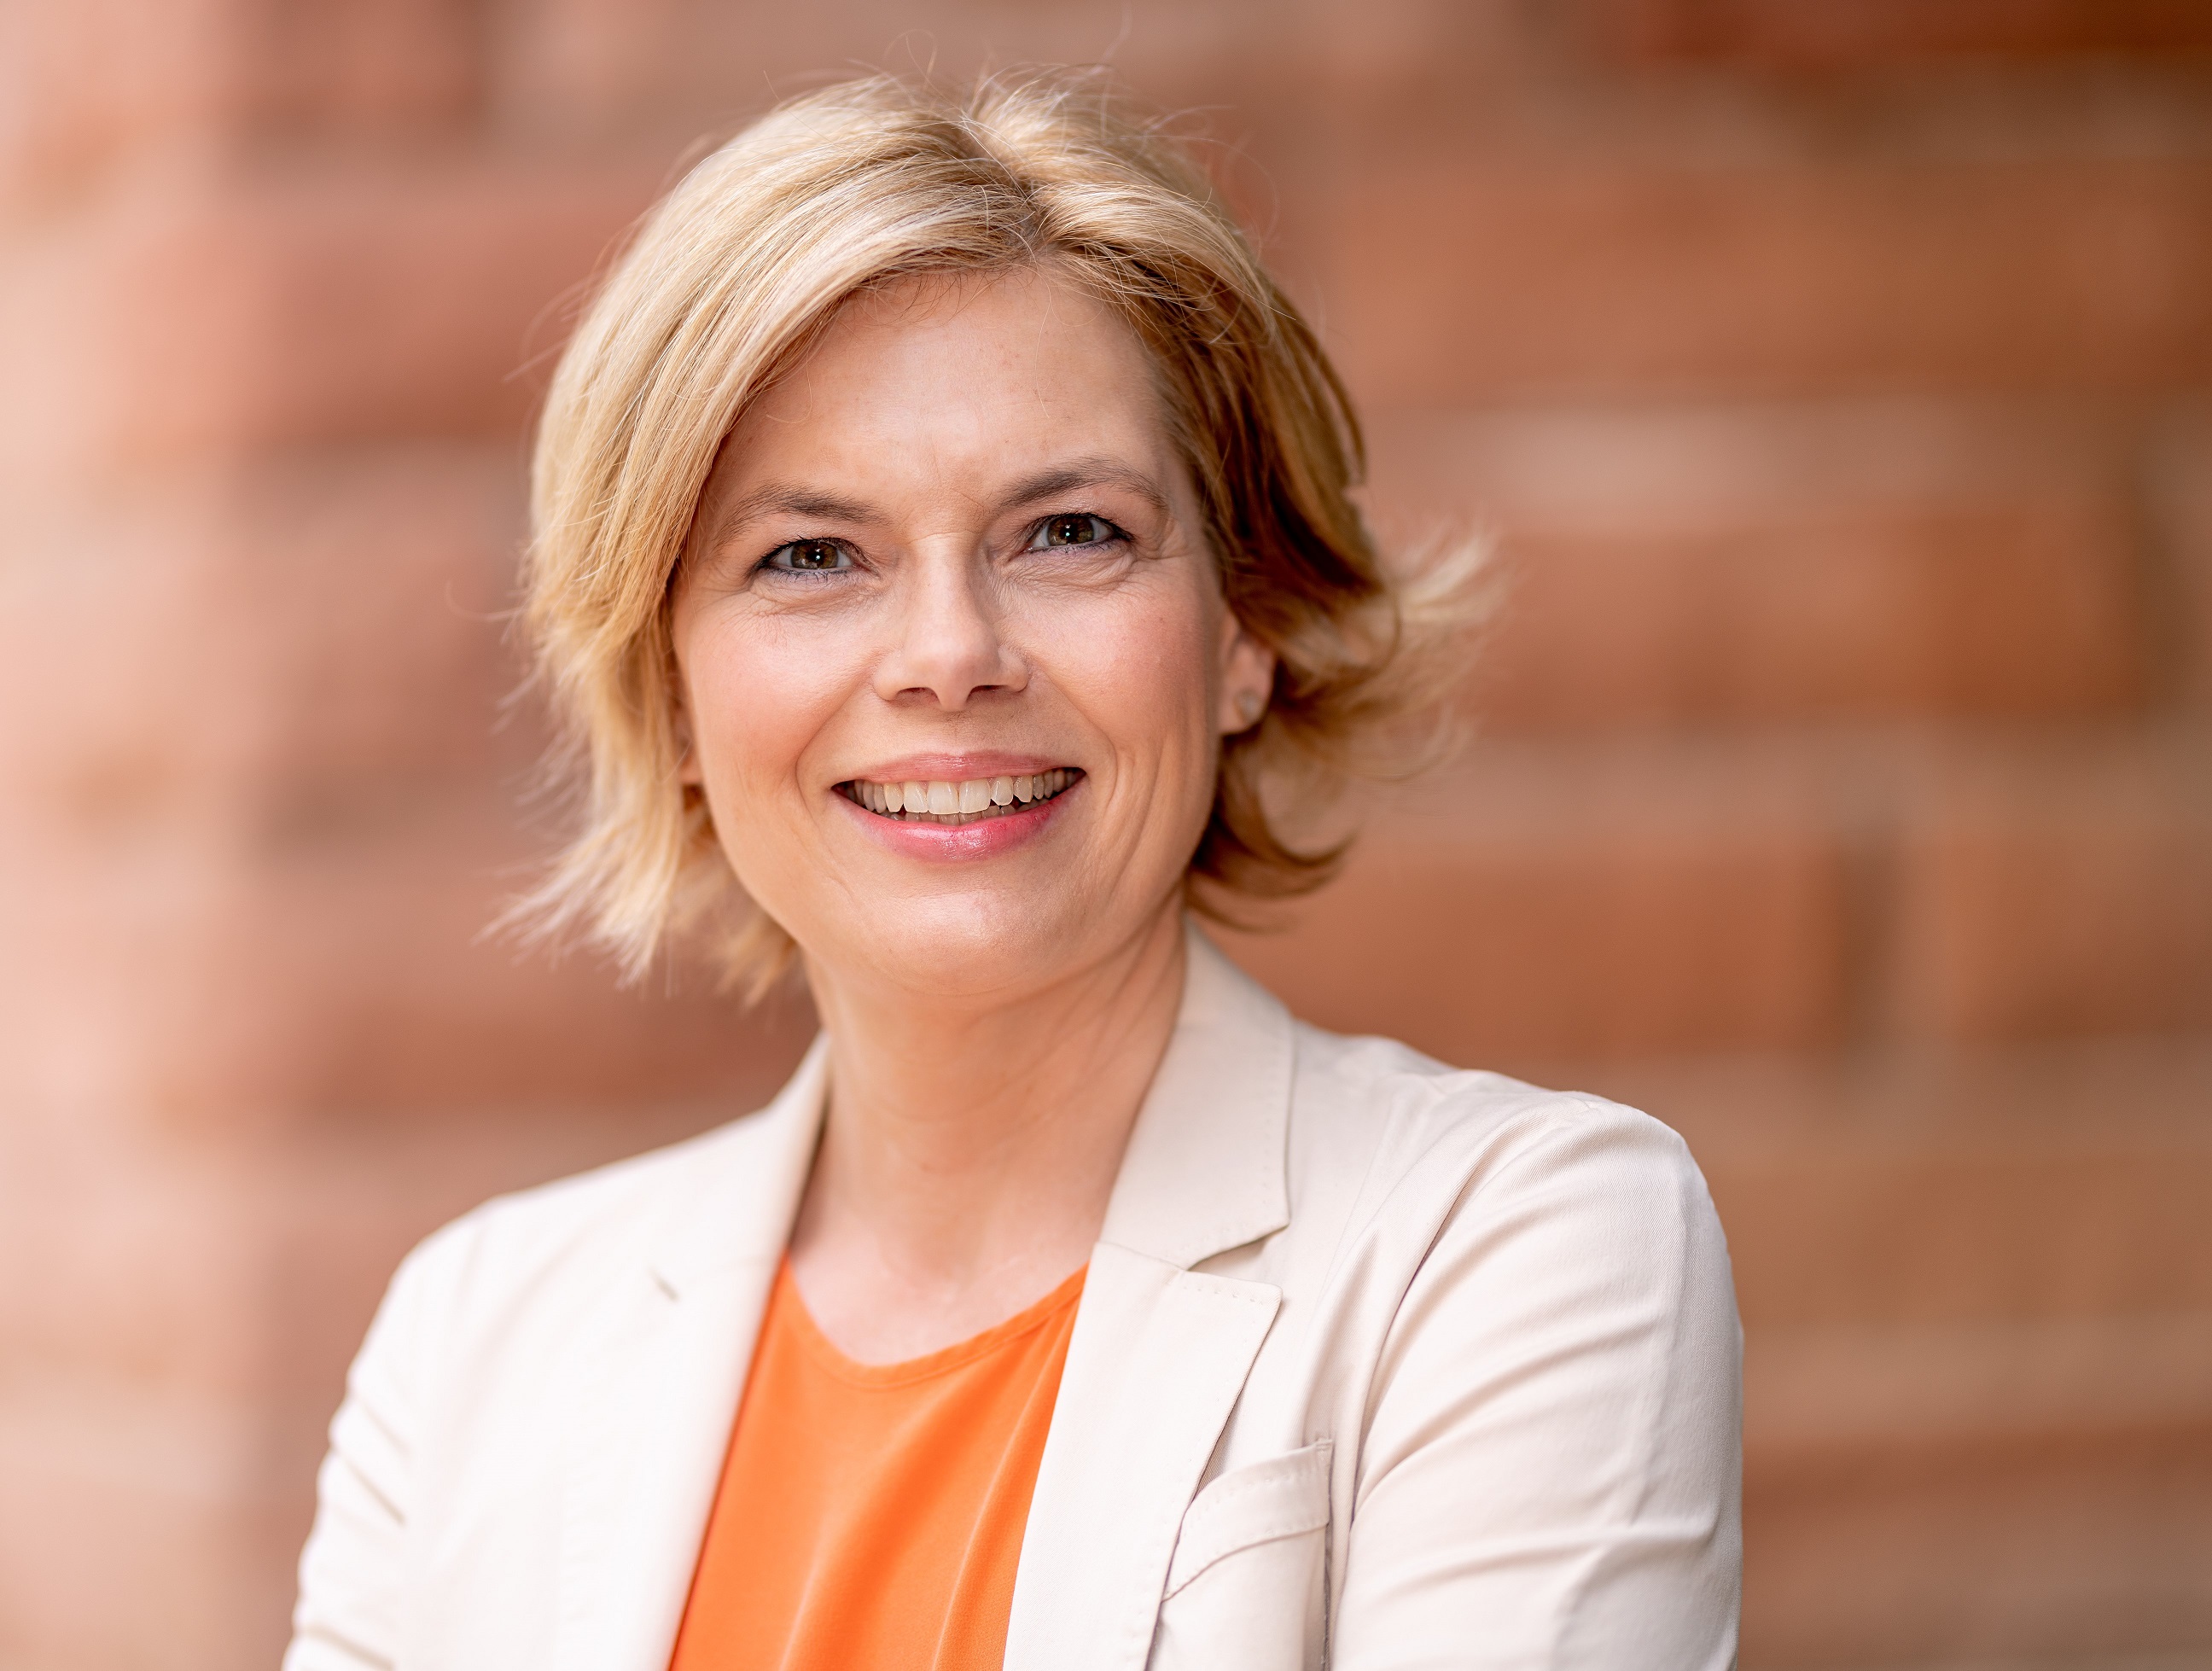 Julia Klöckner MdB – Wirtschaftspolitische
Sprecherin der CDU/CSU-Bundestagsfraktion
& Bundeschatzmeisterin der CDU